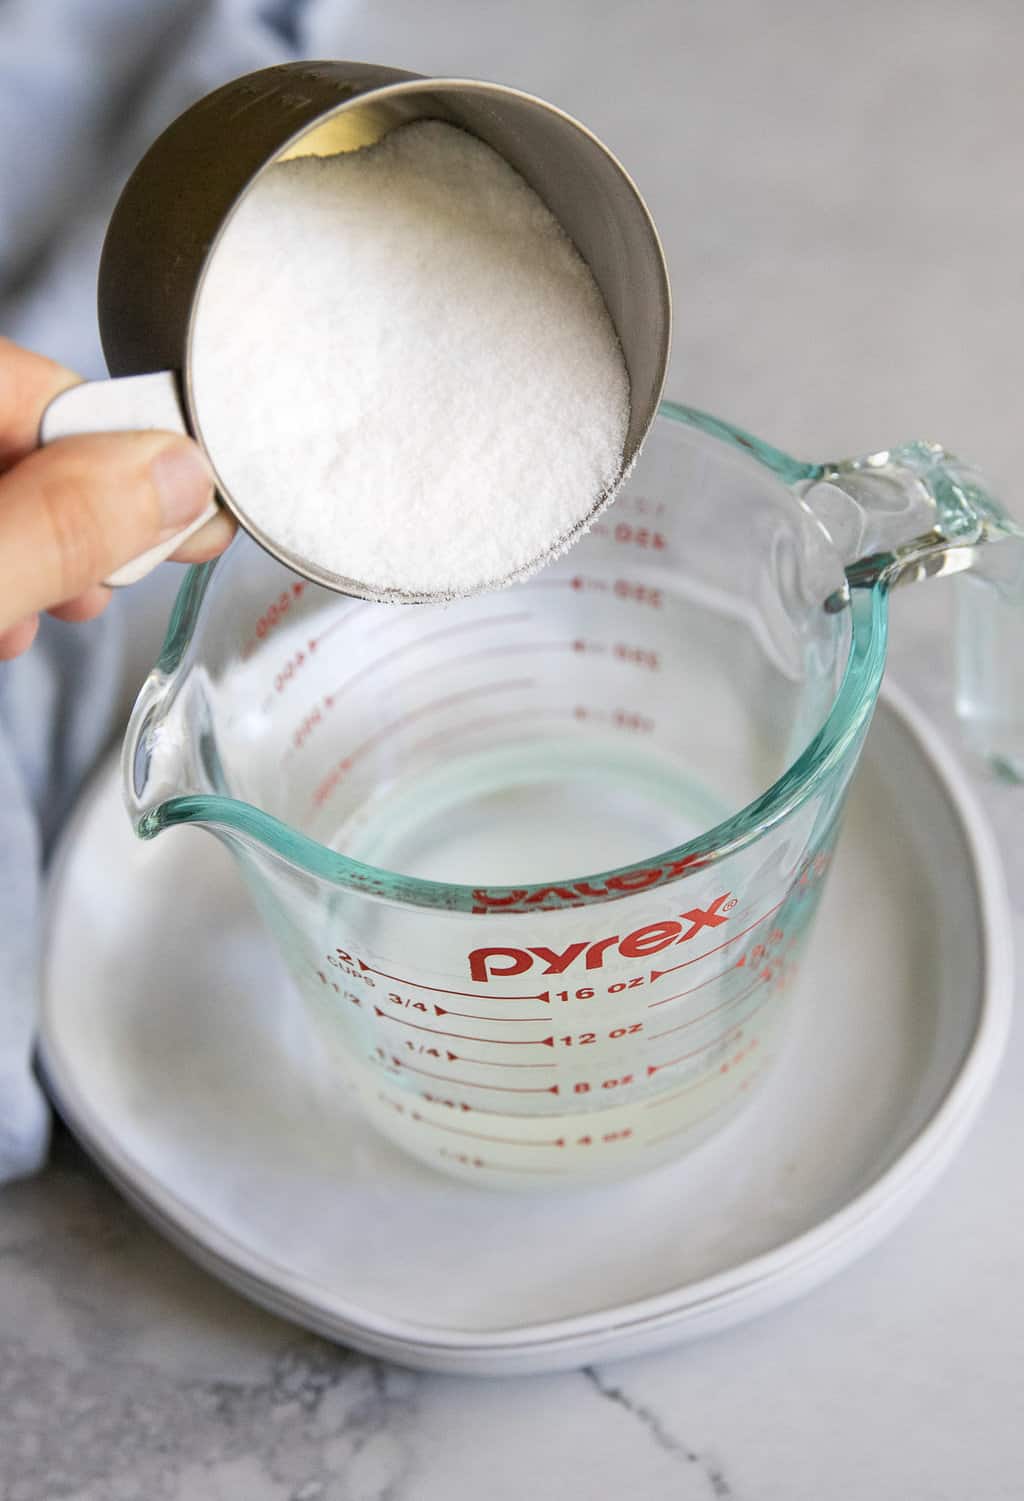 Ajouter de l'eau sucrée à la recette de base de savon à la glycérine